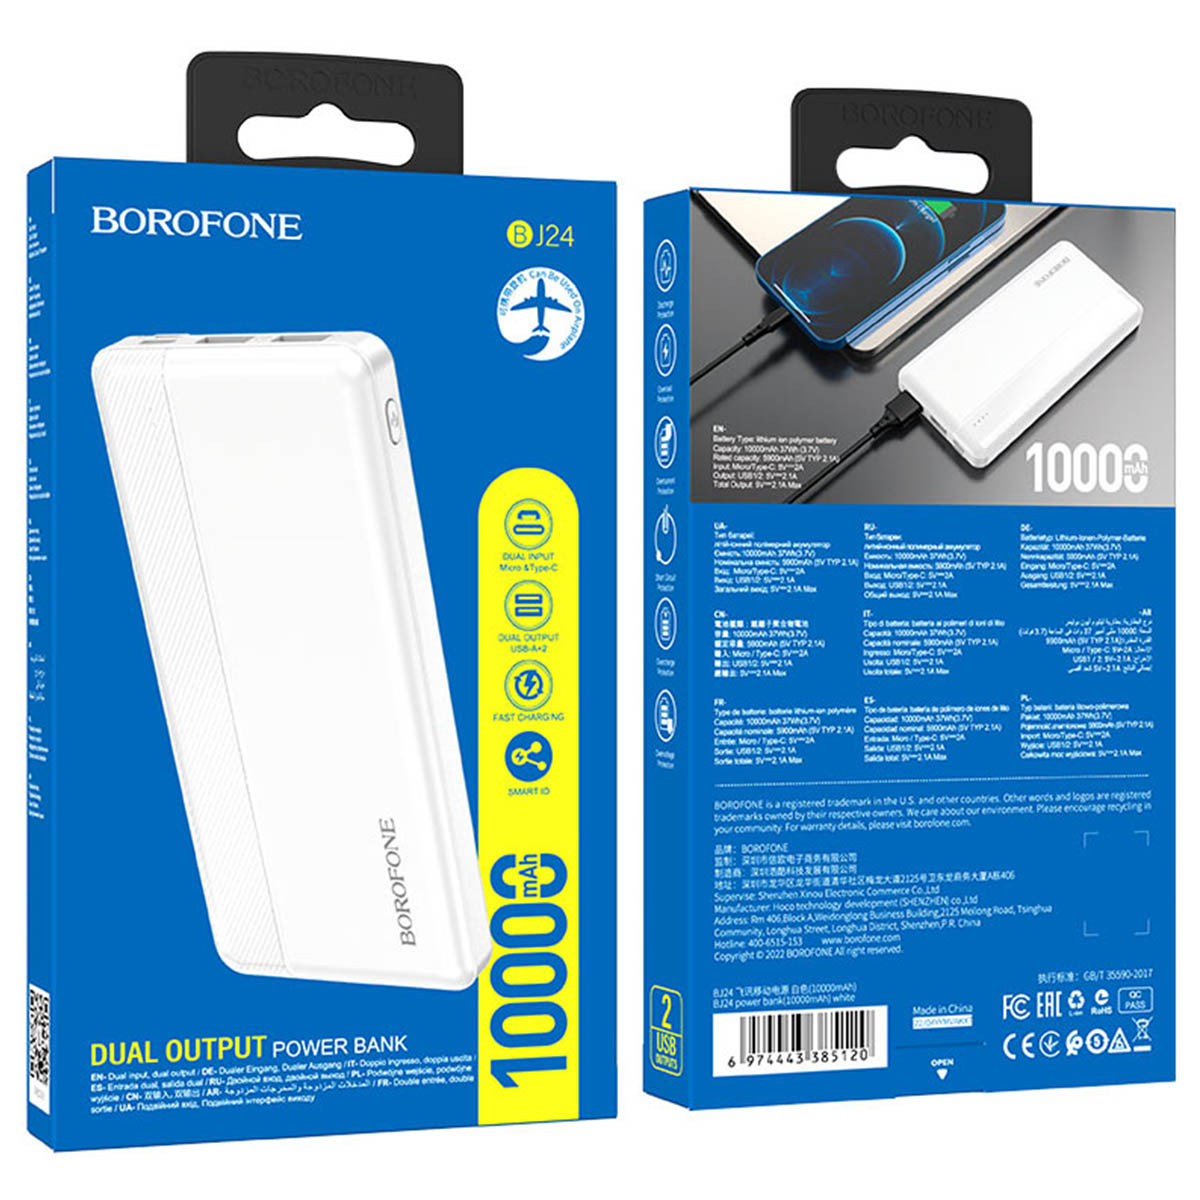 Внешний портативный аккумулятор, Power Bank BOROFONE BJ24, 10000 mAh, цвет белый